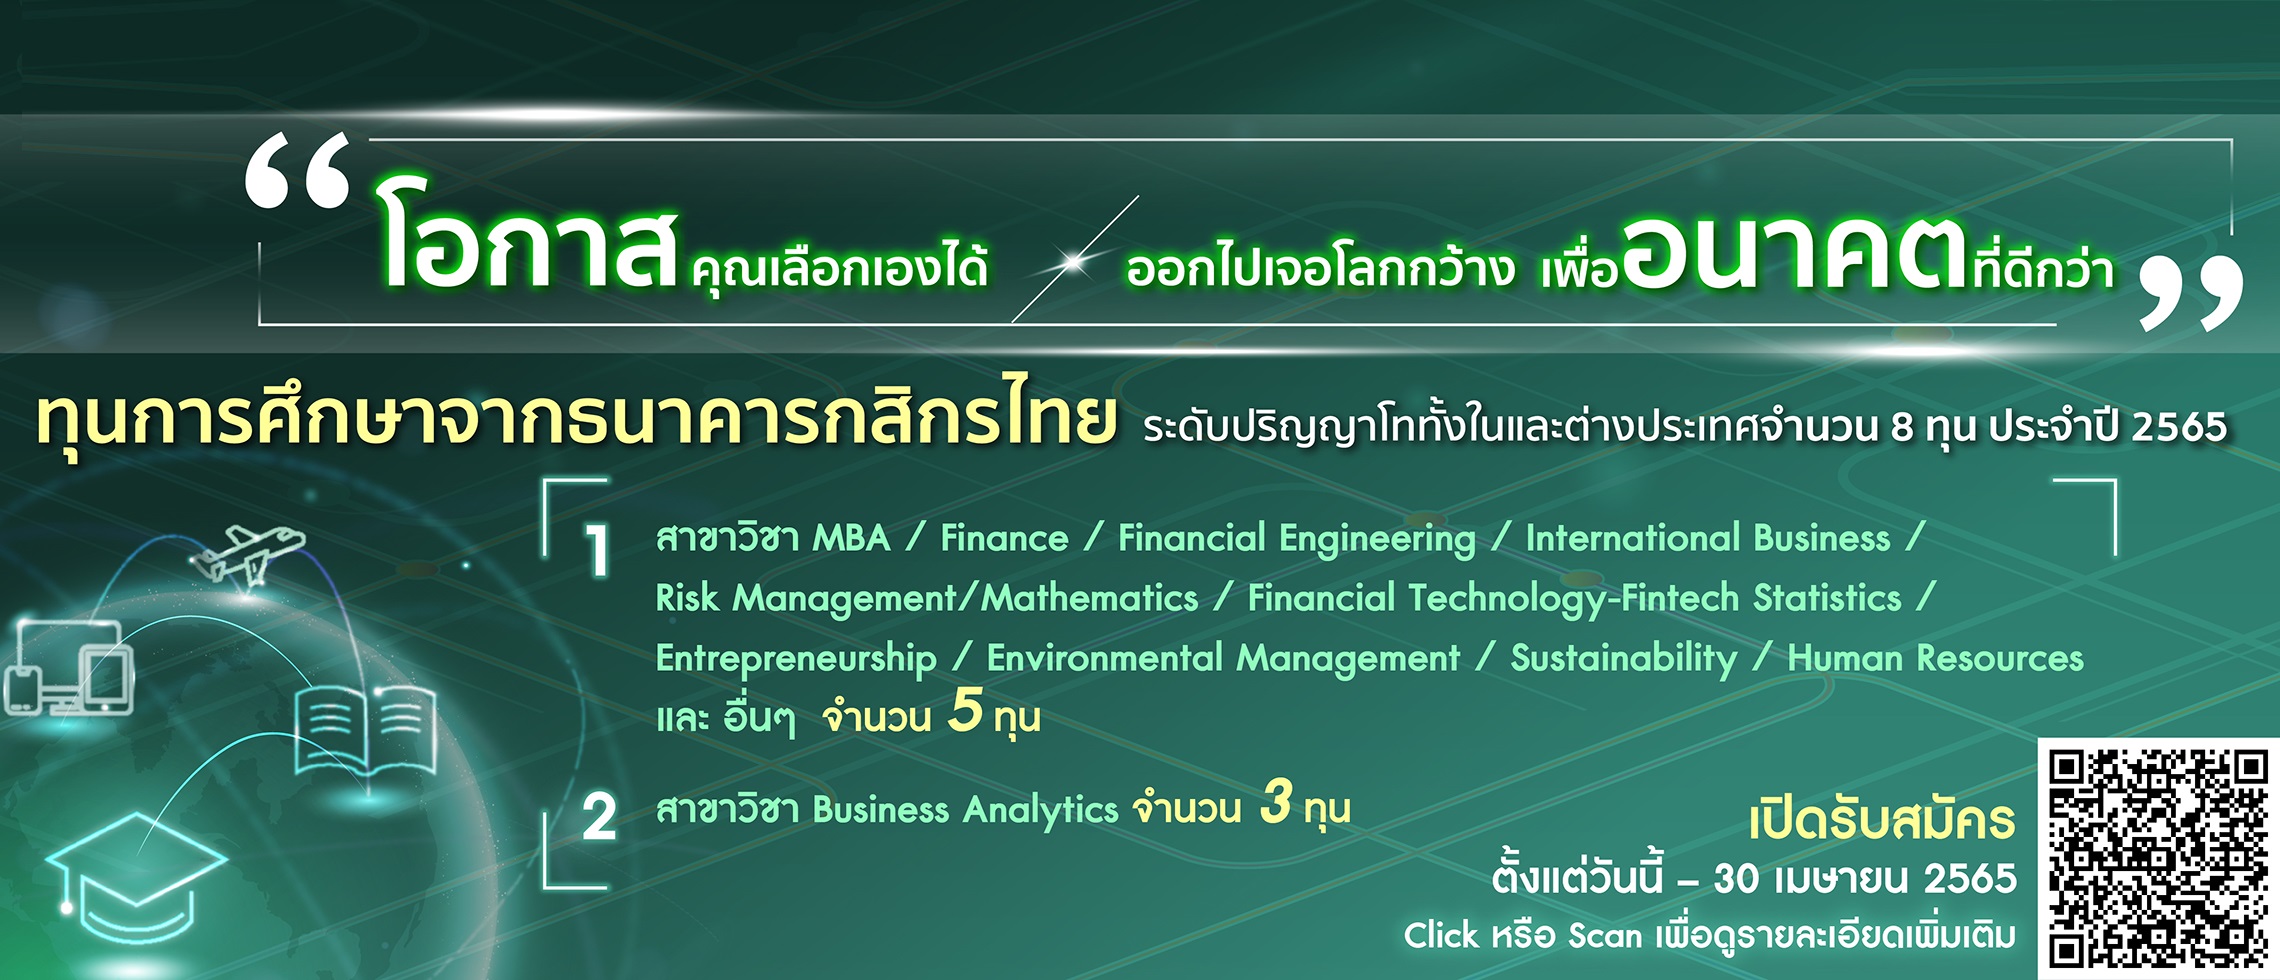 ธนาคารกสิกรไทยเปิดให้ทุนพนักงานและบุคคลทั่วไป เรียนต่อปริญญาโท ณ สถาบันการศึกษา ทั้งในและต่างประเทศ